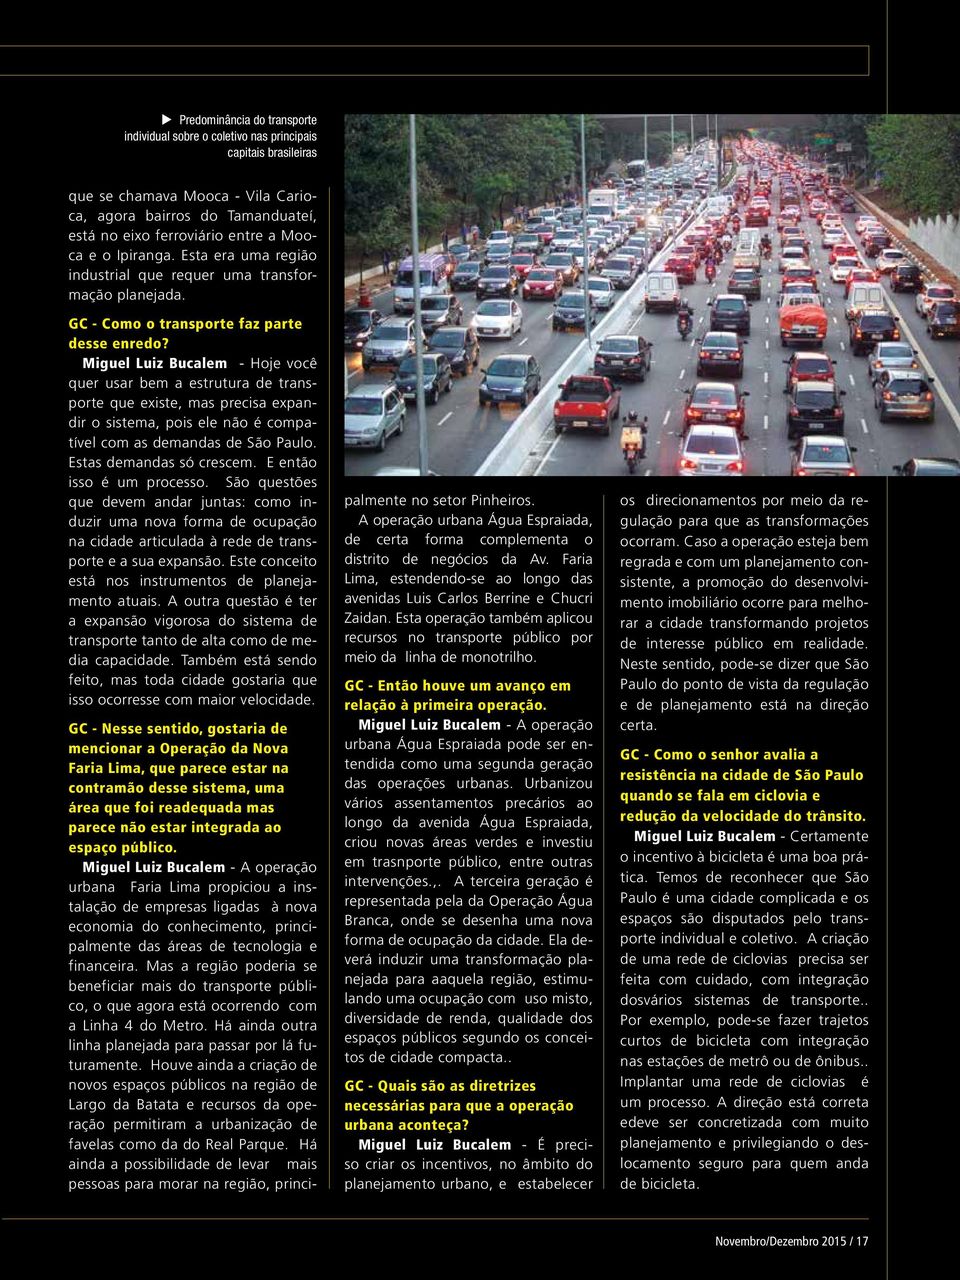 Miguel Luiz Bucalem - Hoje você quer usar bem a estrutura de transporte que existe, mas precisa expandir o sistema, pois ele não é compatível com as demandas de São Paulo. Estas demandas só crescem.